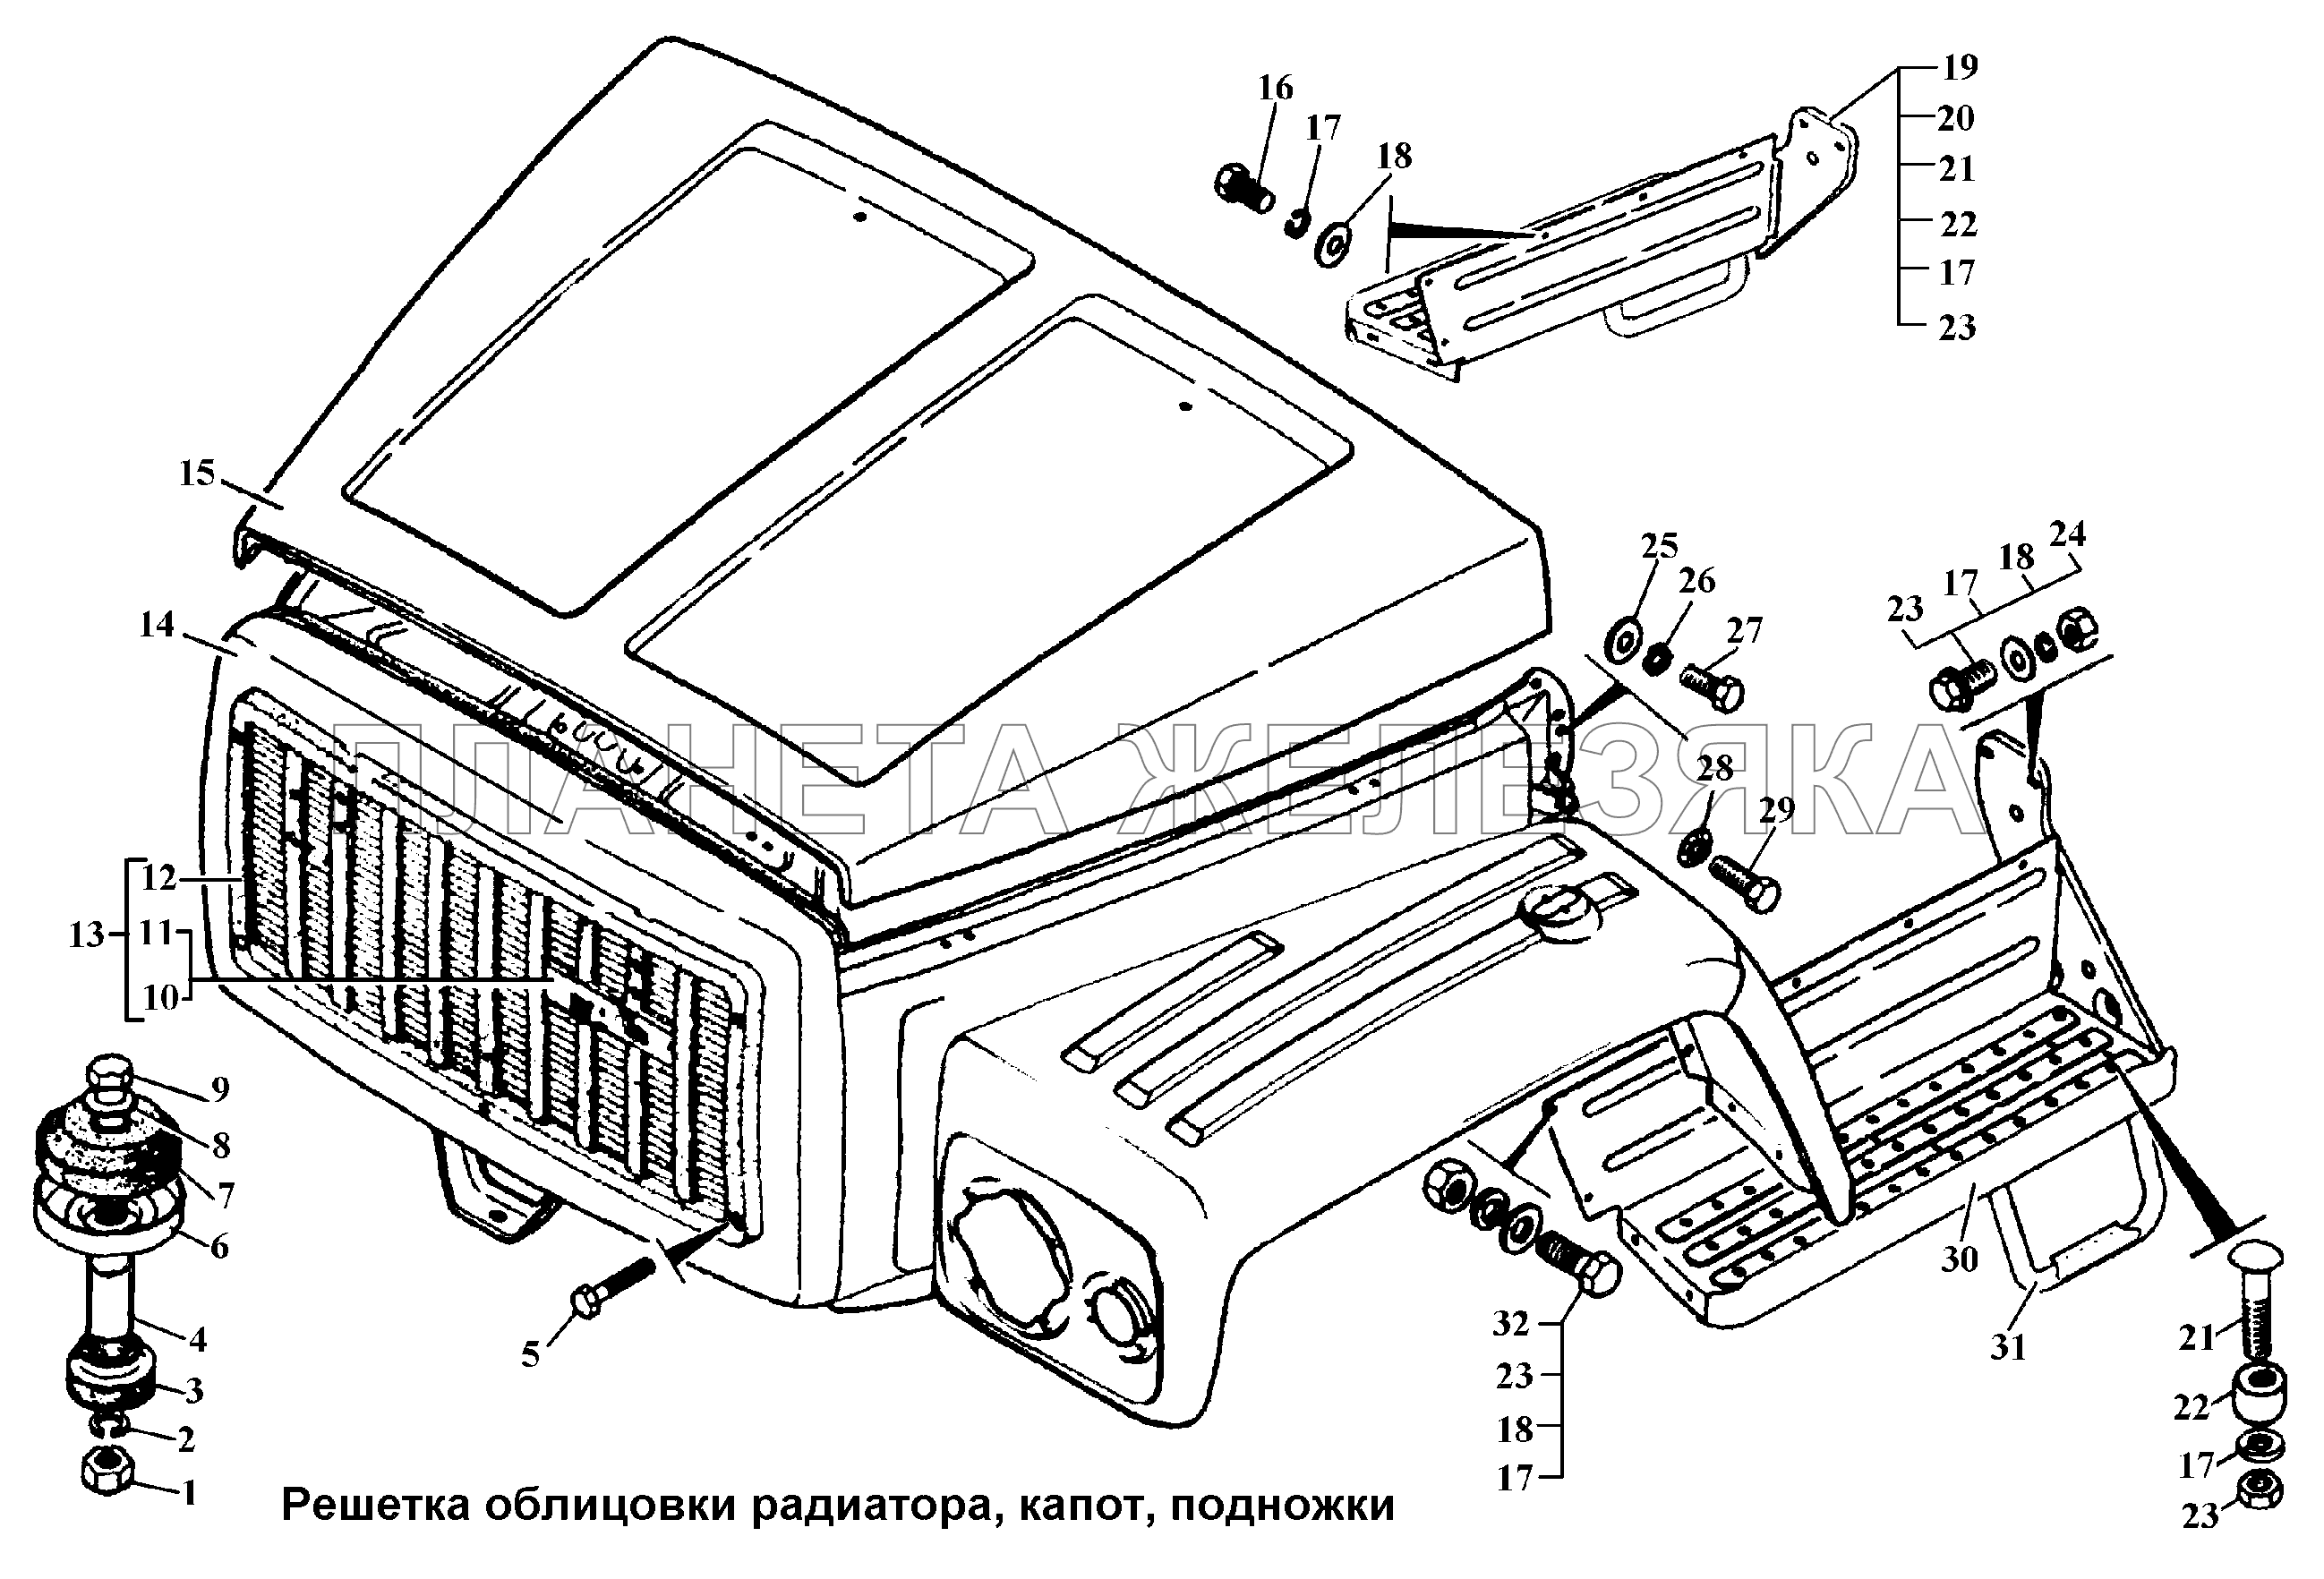 Решетка облицовки радиатора, капот, подножки ГАЗ-3308